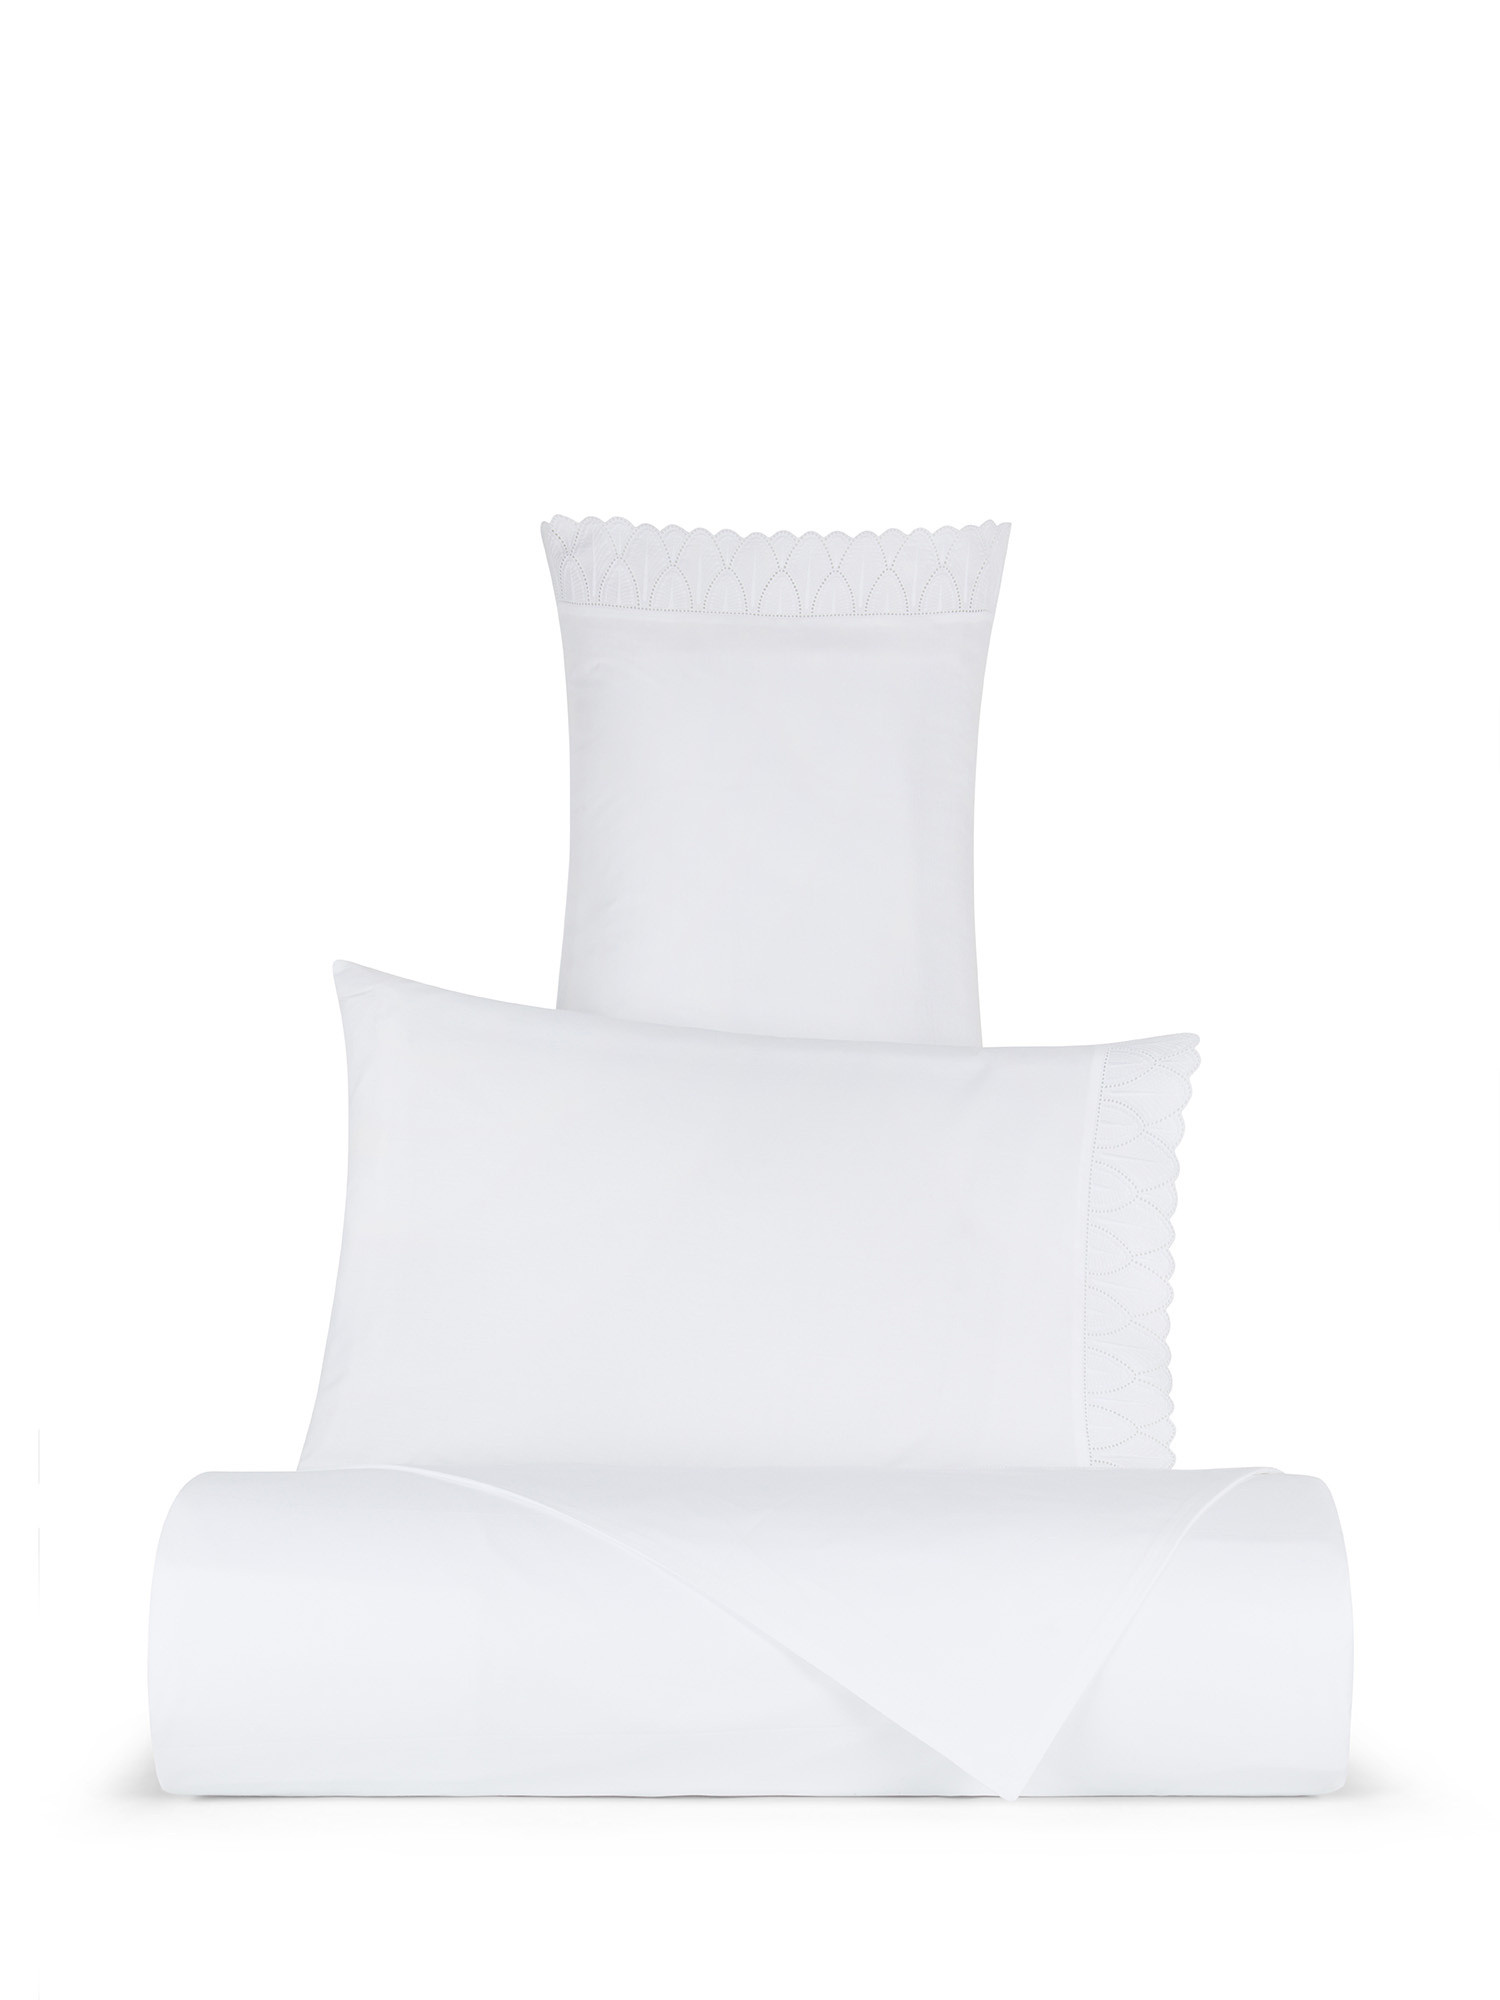 Pillowcase in fine cotton percale Portofino, White, large image number 3